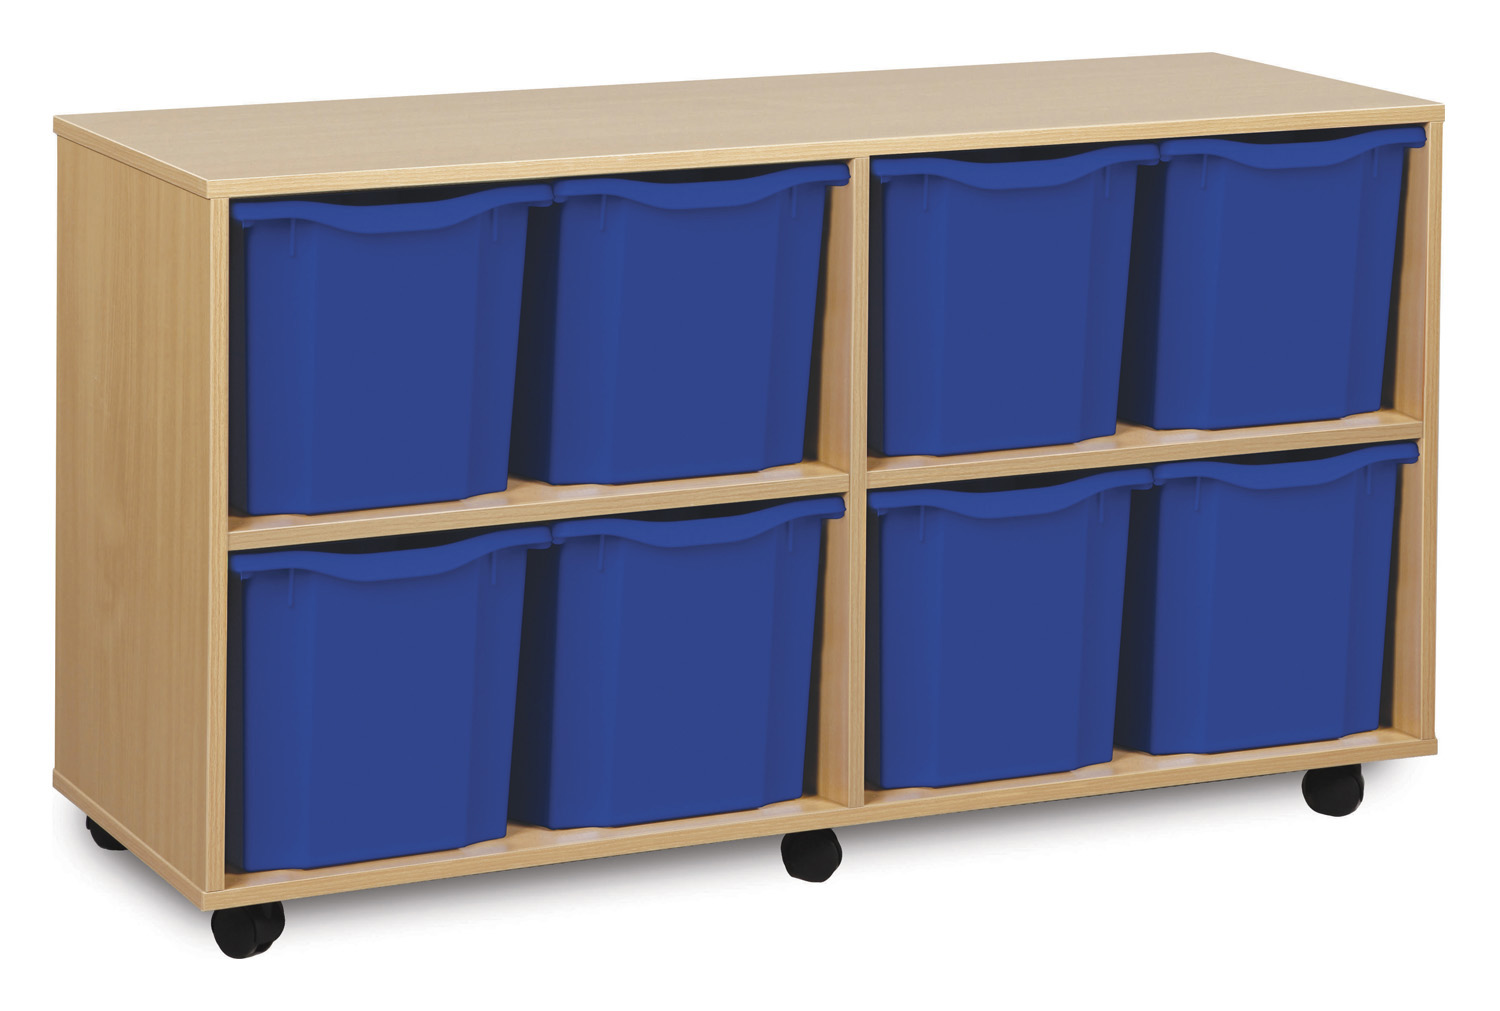 8 Jumbo Classroom Tray Storage Unit, Blue Classroom Trays